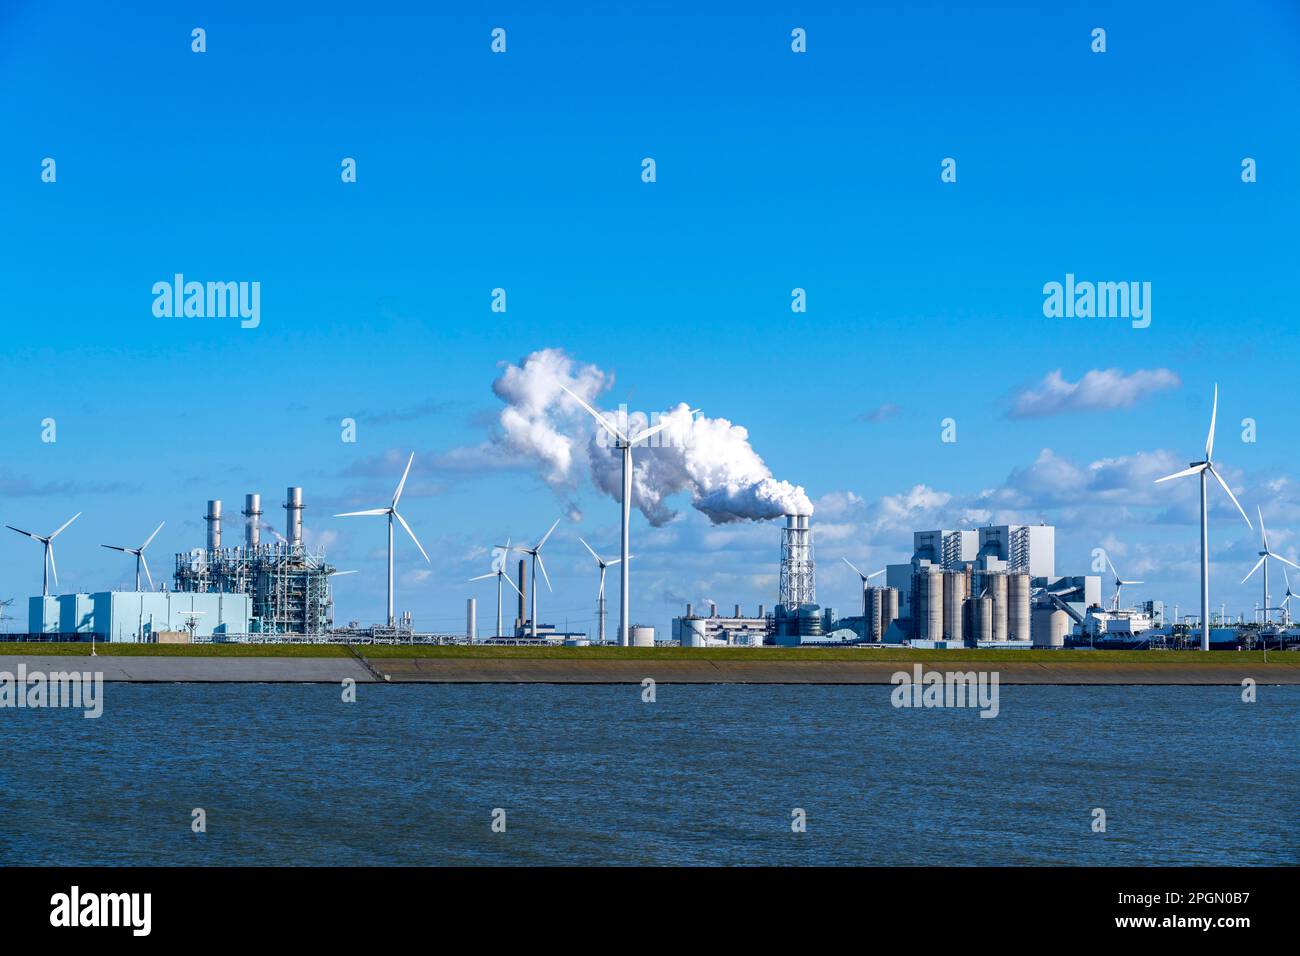 Links das gasbefeuerte Kraftwerk Magnum mit einer Kapazität von 1410 Megawatt; rechts das Kohlekraftwerk Eemshavencentrale von RWE im Stockfoto